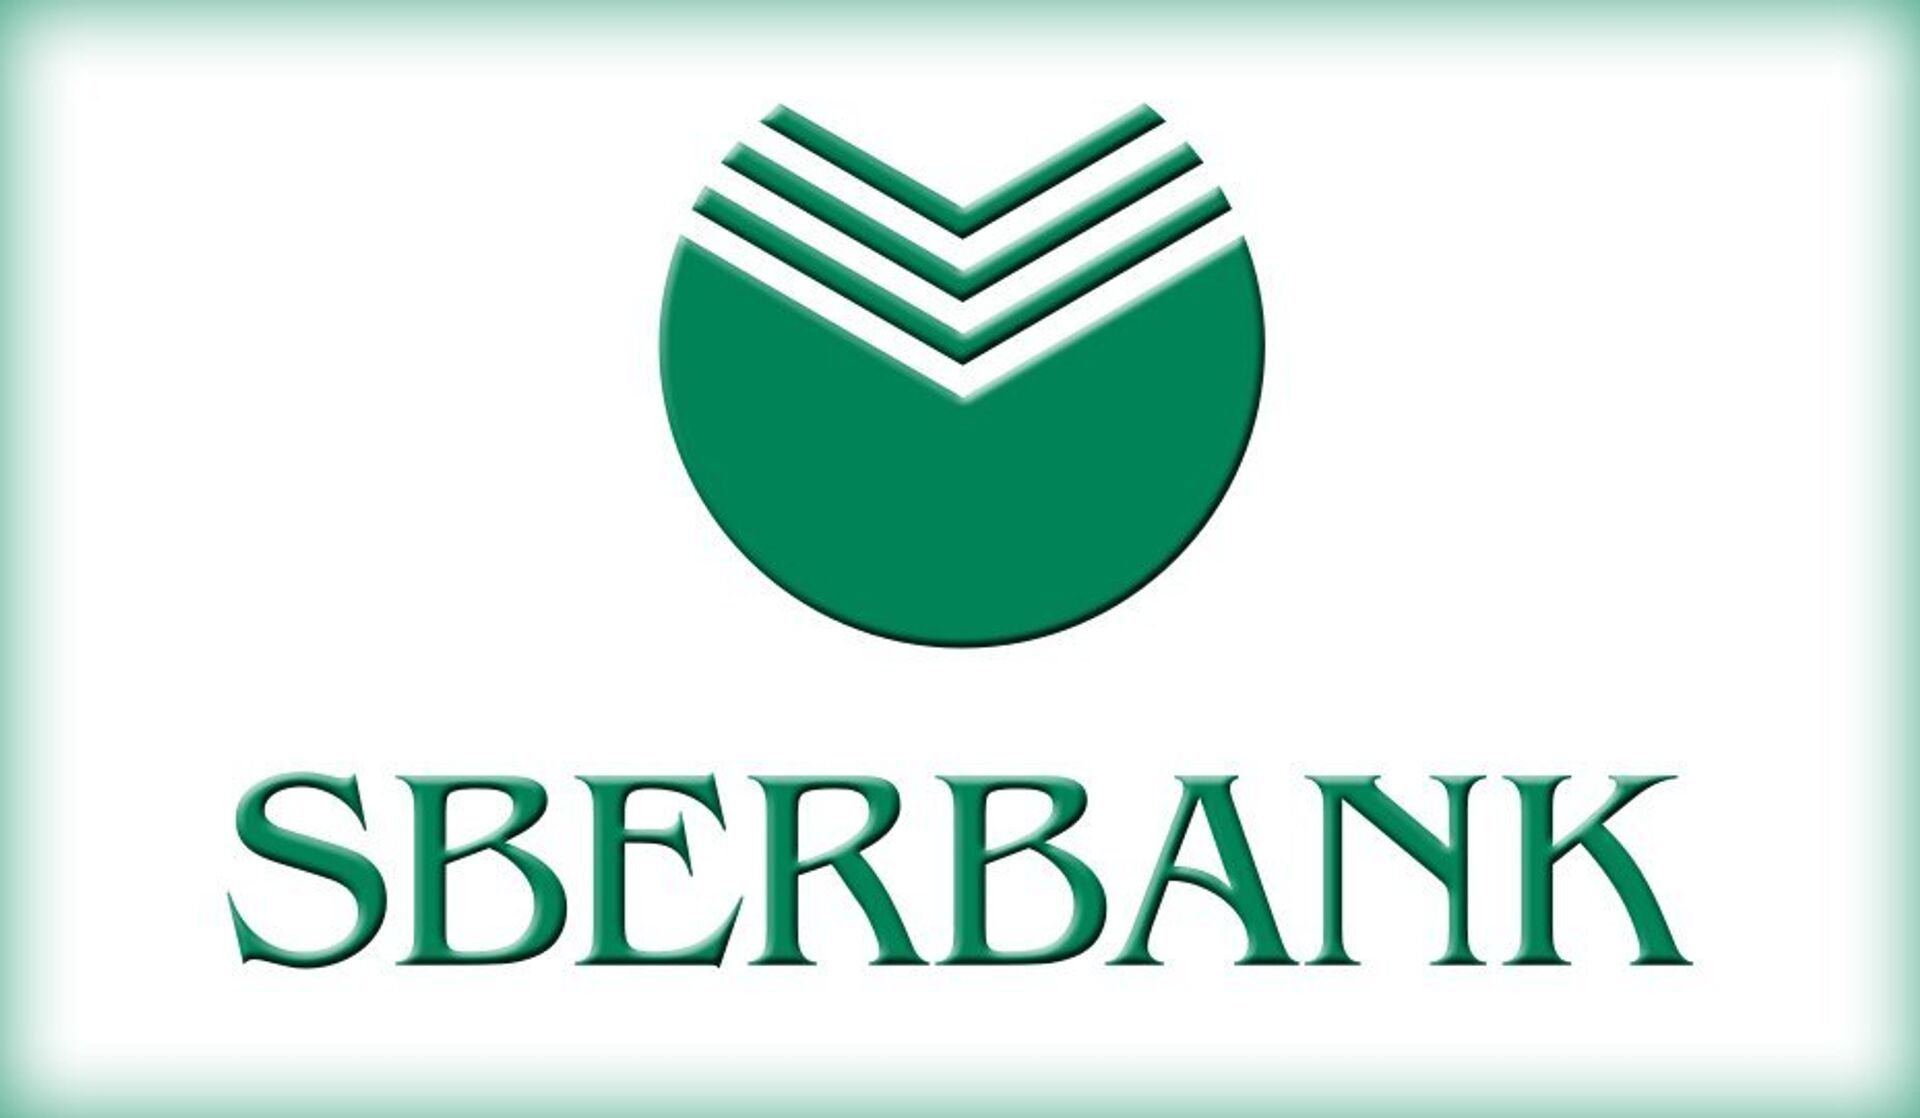 Sberbank me. Сбербанк. Значок Сбербанка. Сбербанк логотип на английском. Сбербанк красивый логотип.